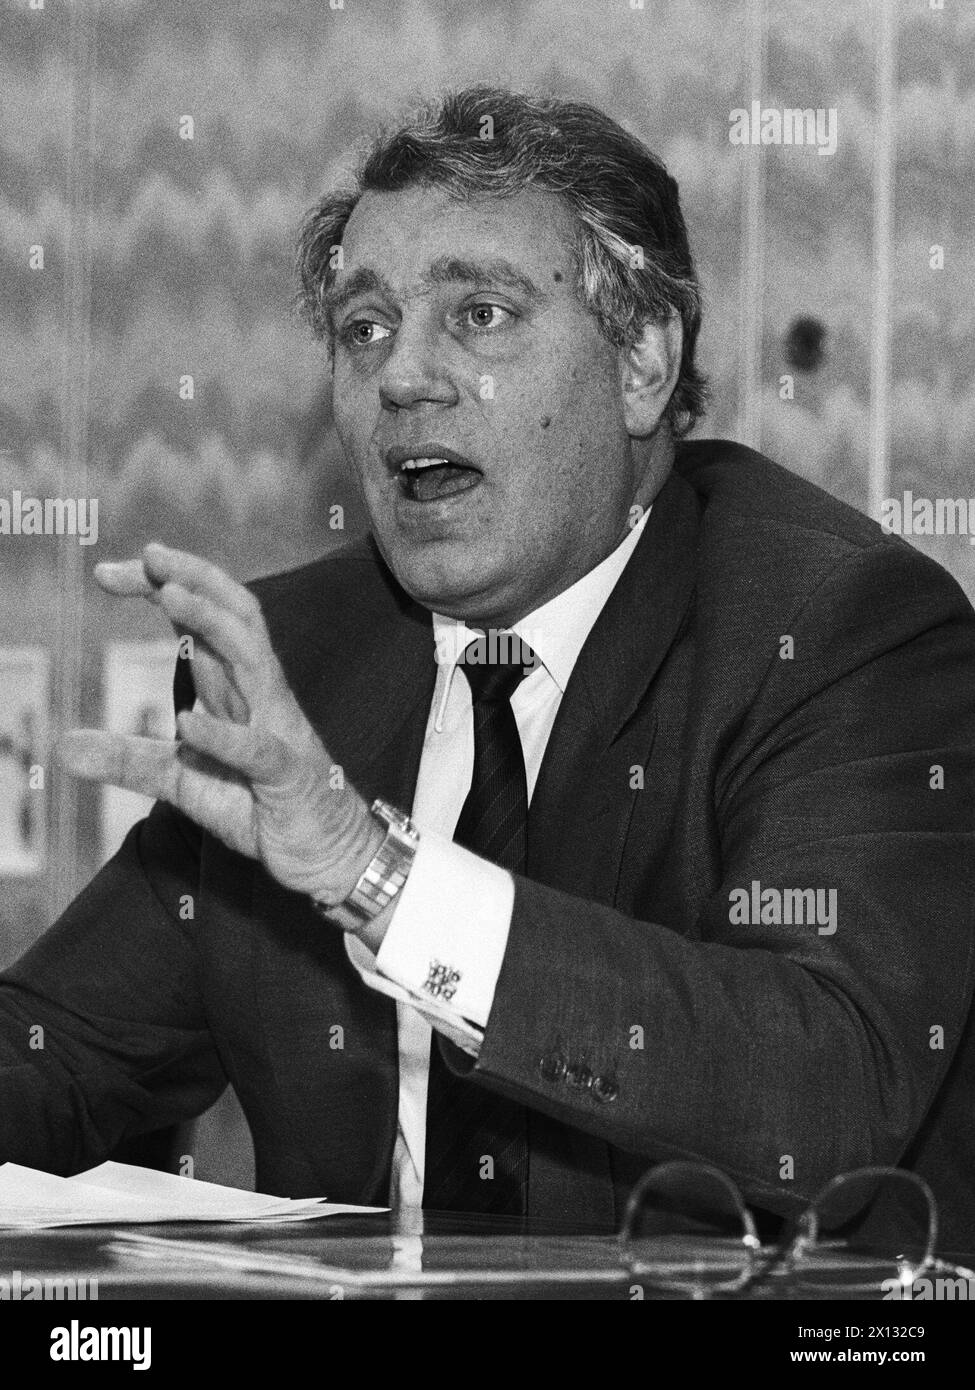 Vienne, le 27 janvier 1988 : le ministre autrichien des industries d'Etat Rudolf Streicher dans le cadre d'une conférence de presse, concernant l'affaire Noricum et les activités environnementales de l'OEIAG-Concern (Agence autrichienne de holding et de privatisation). - 19880127 PD0005 - Rechteinfo : droits gérés (RM) Banque D'Images